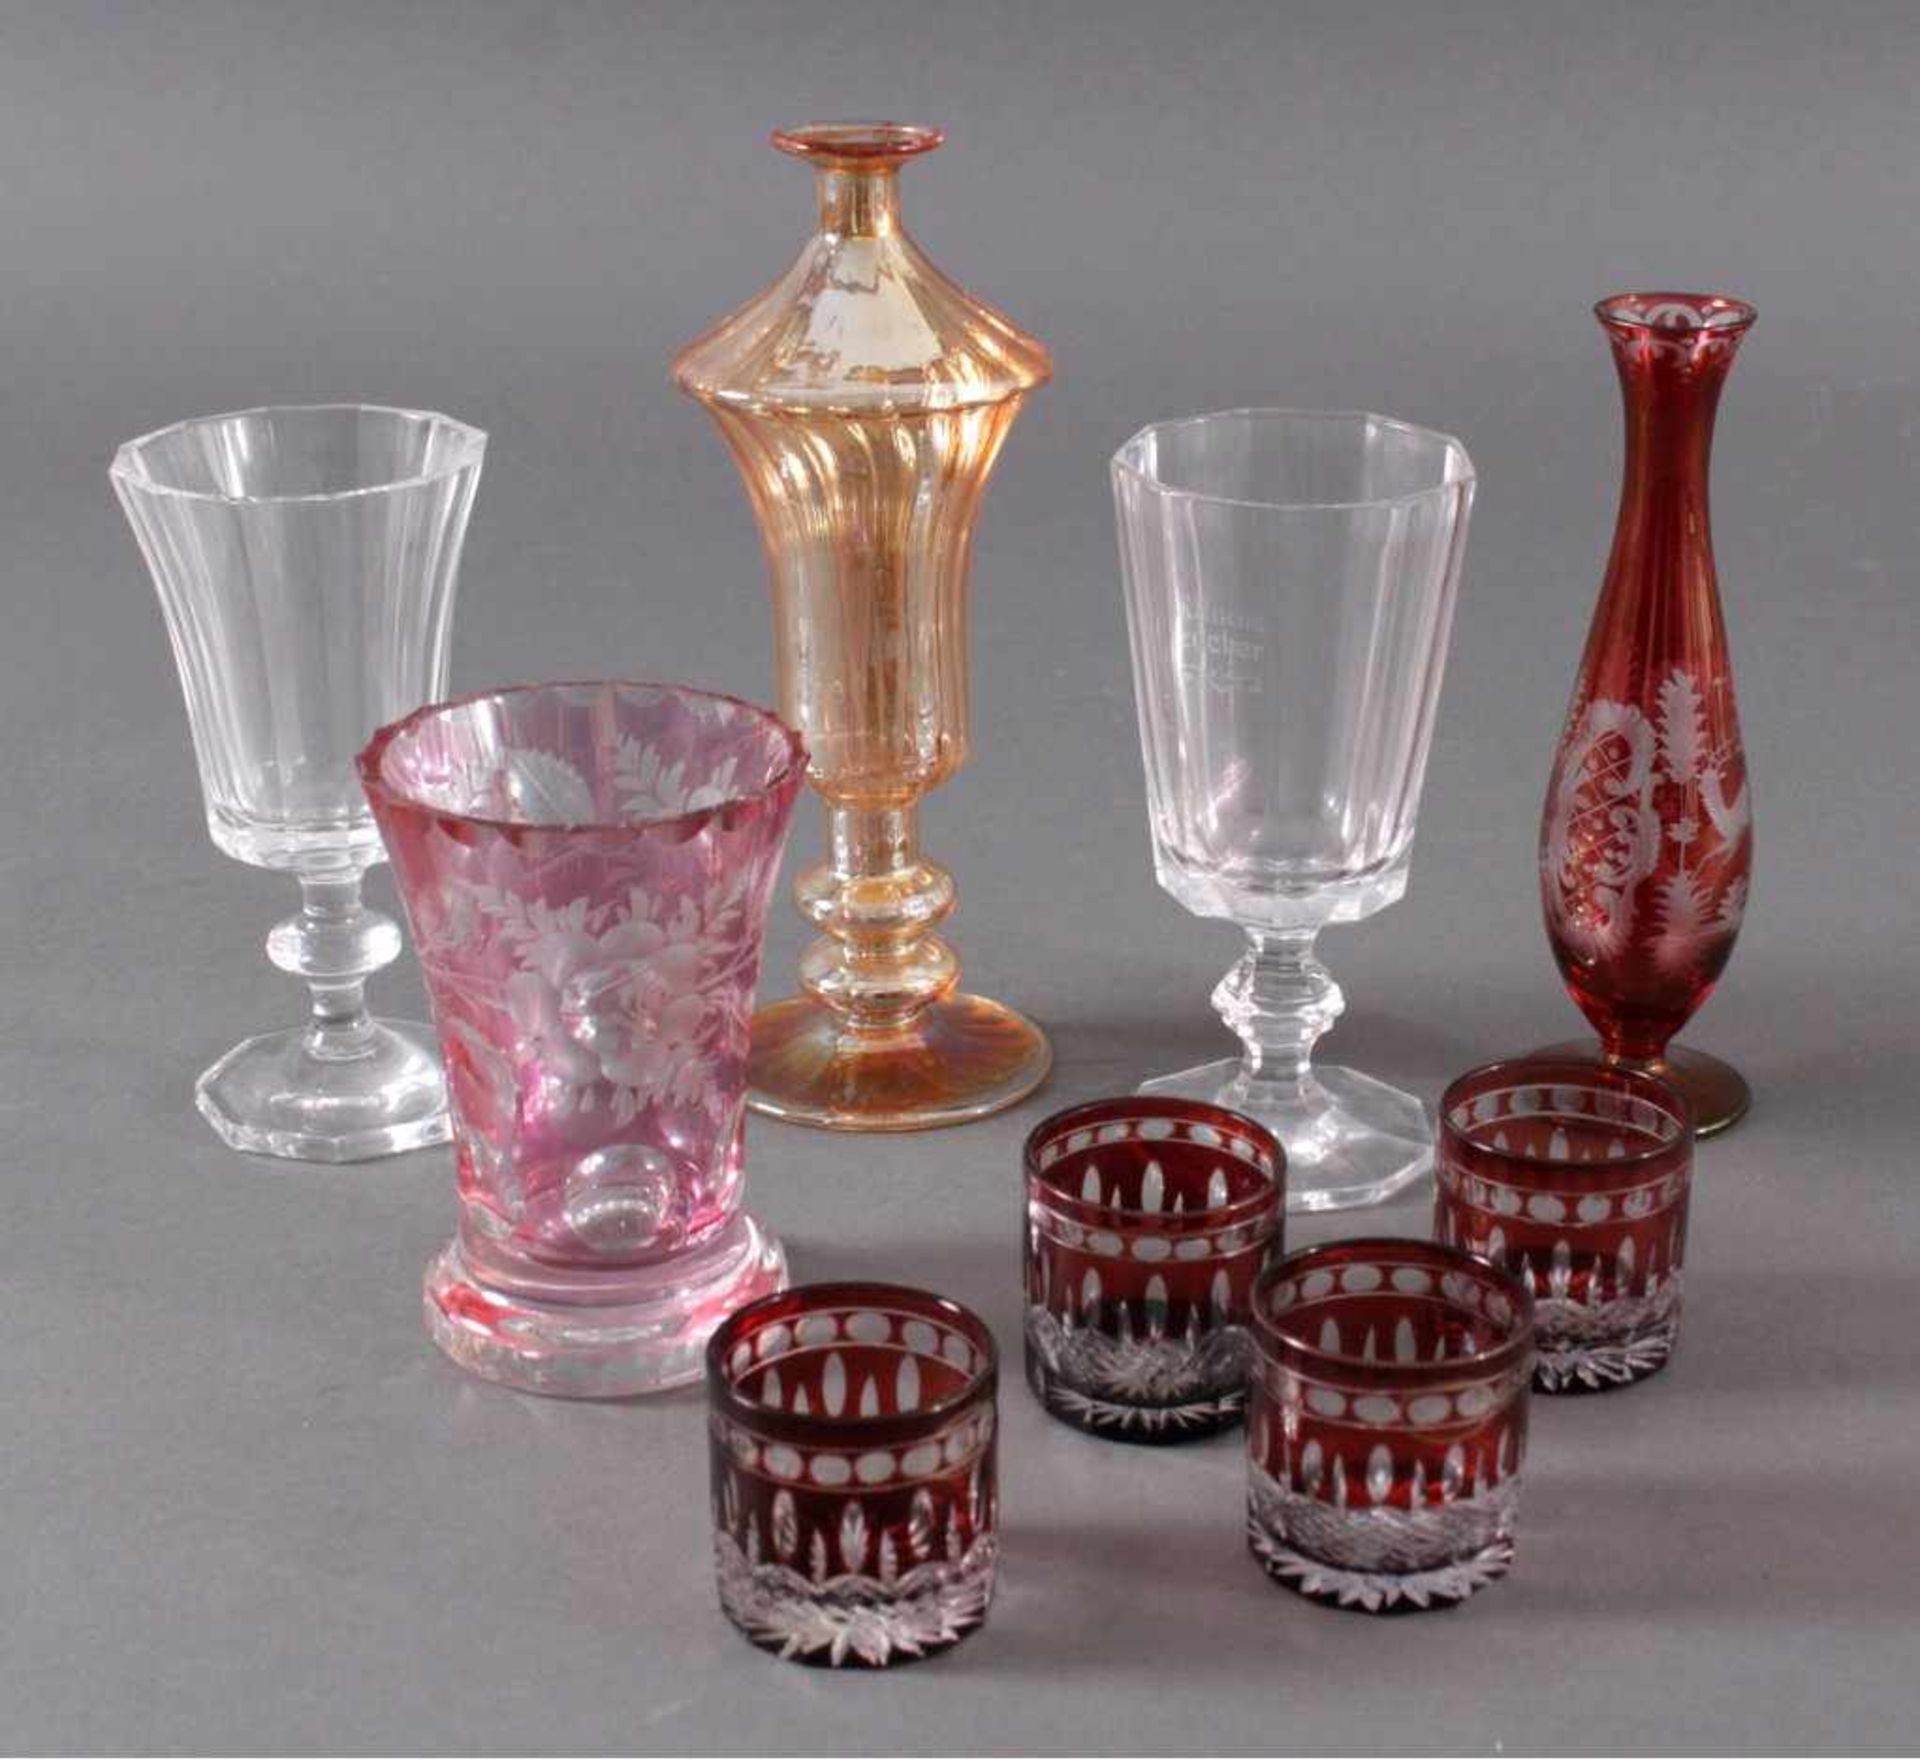 9 verschiedene GläserGläser mit unterschiedlichen Dekoren, teils farbloses Glas,teils rot